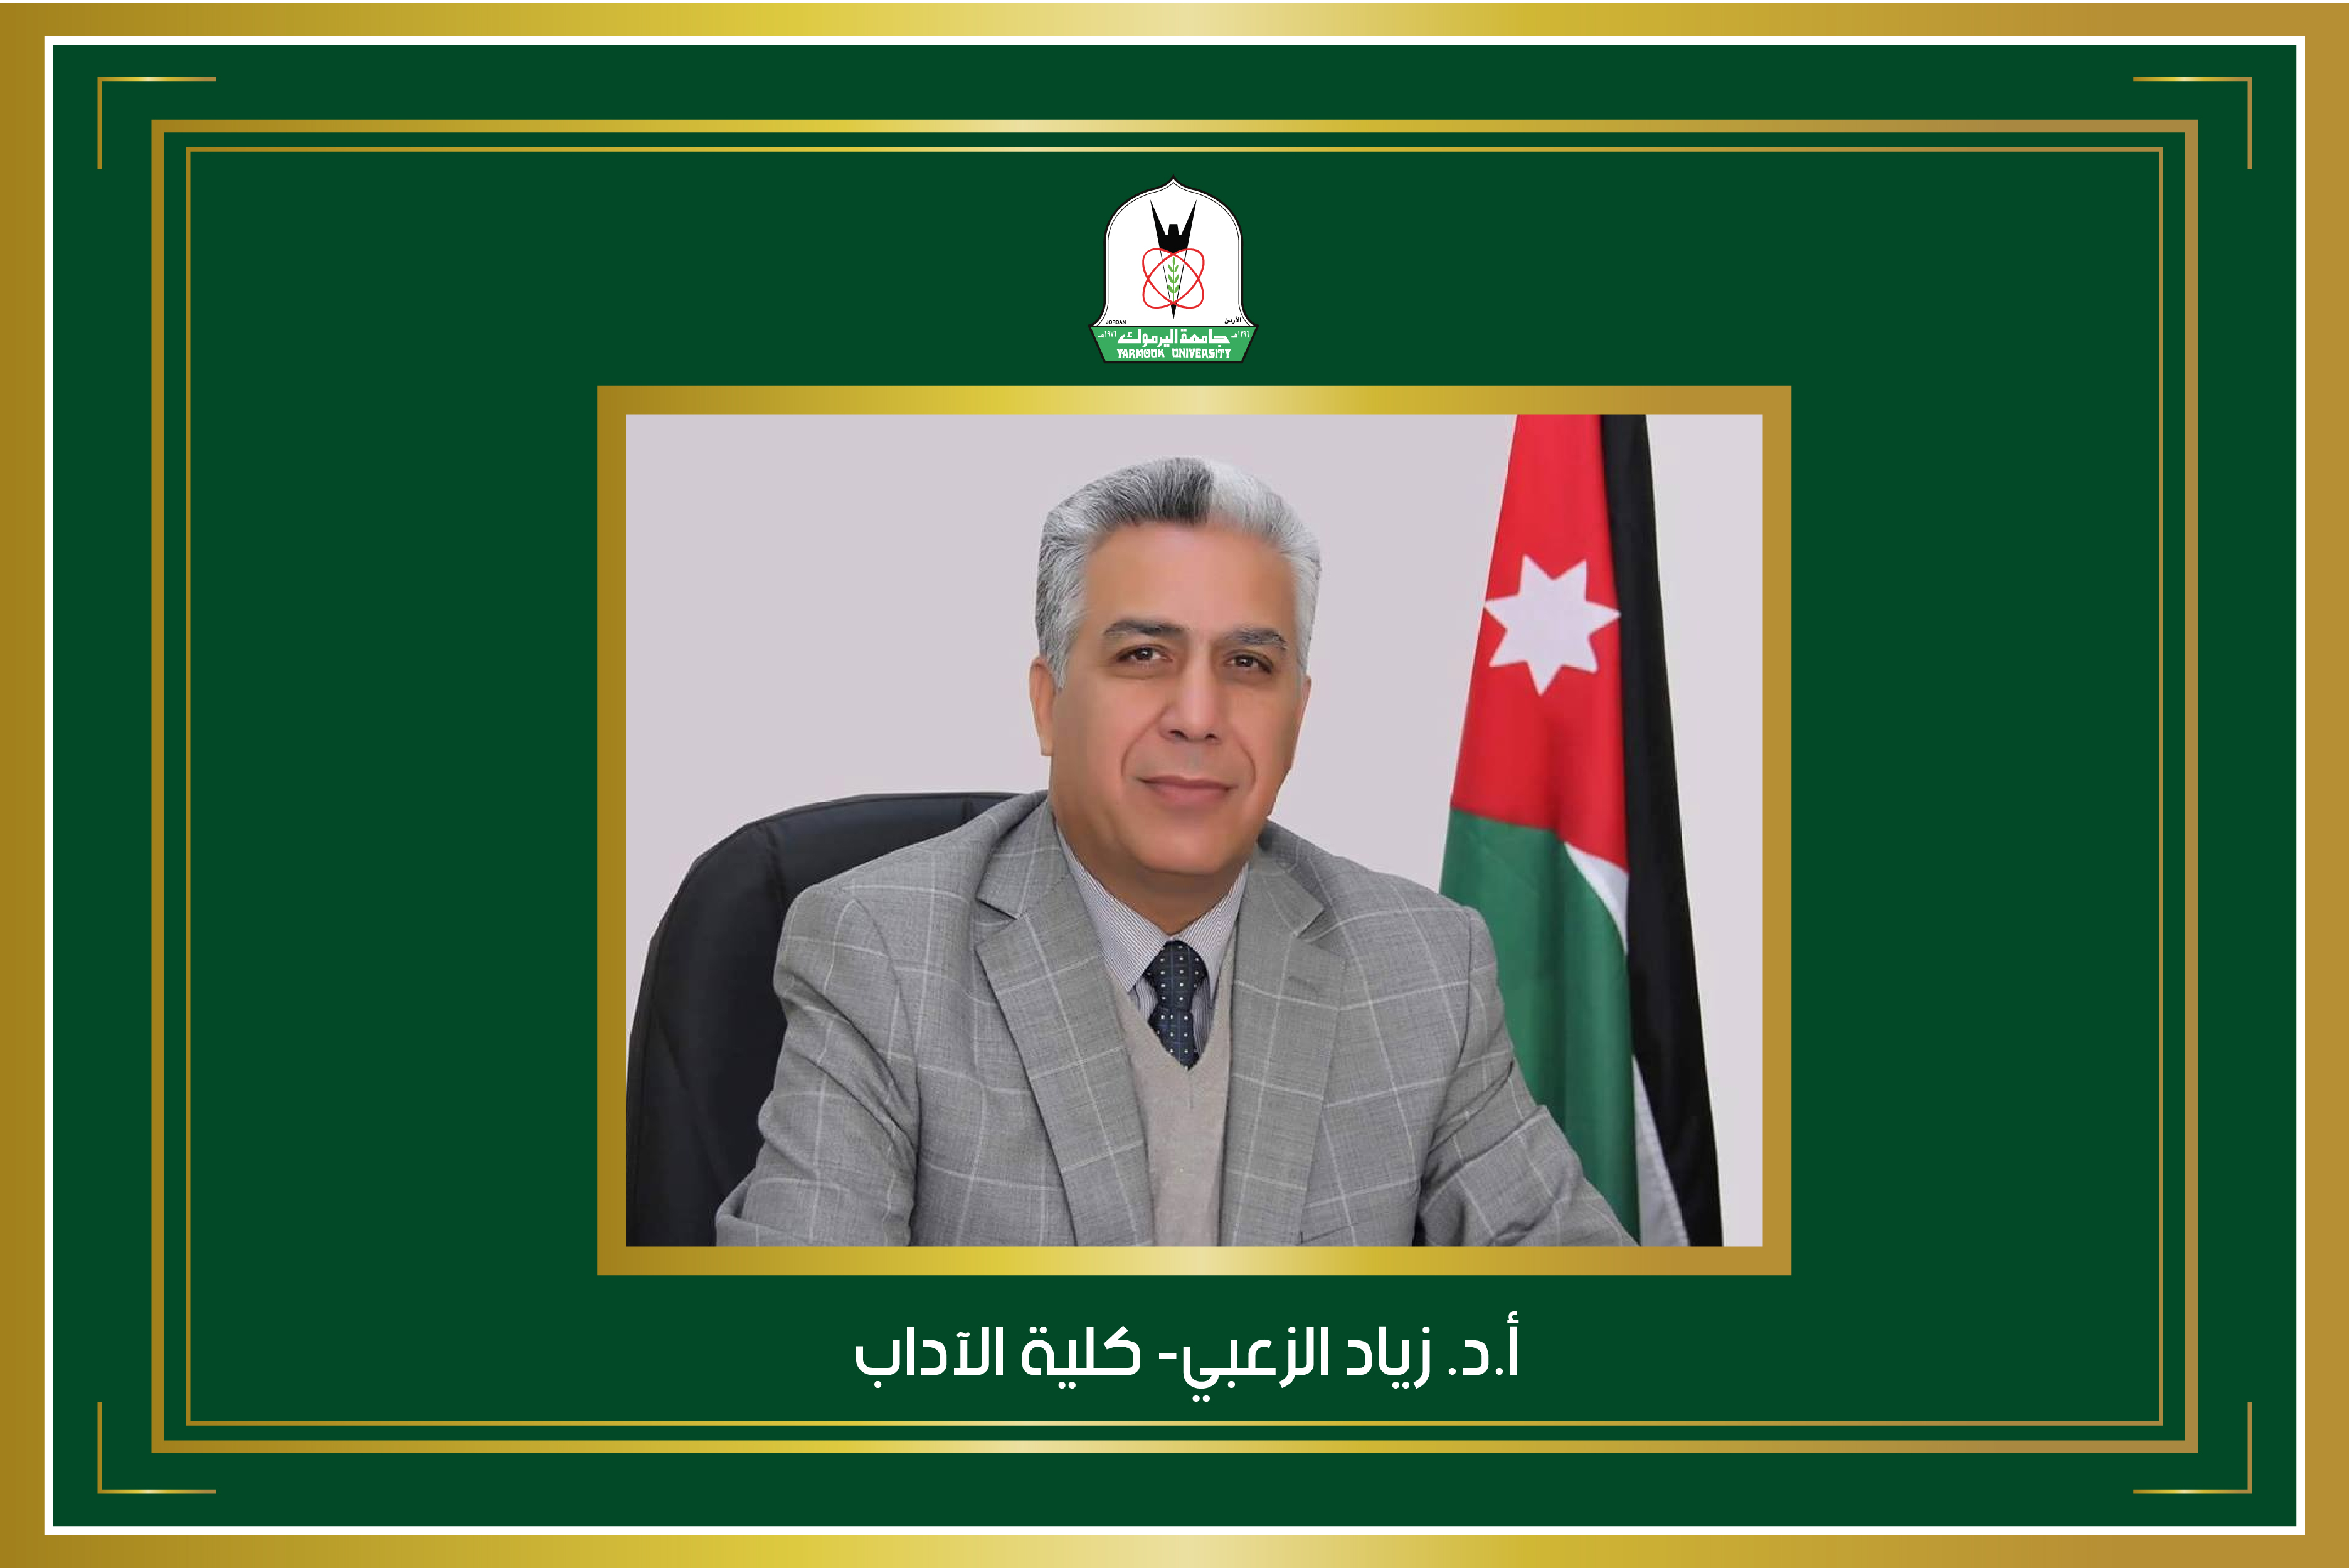 الزعبي عضوا في هيئة تحرير مجلتي "الأردنية في اللغة العربية" و "سياقات اللغة والدراسات البينية"